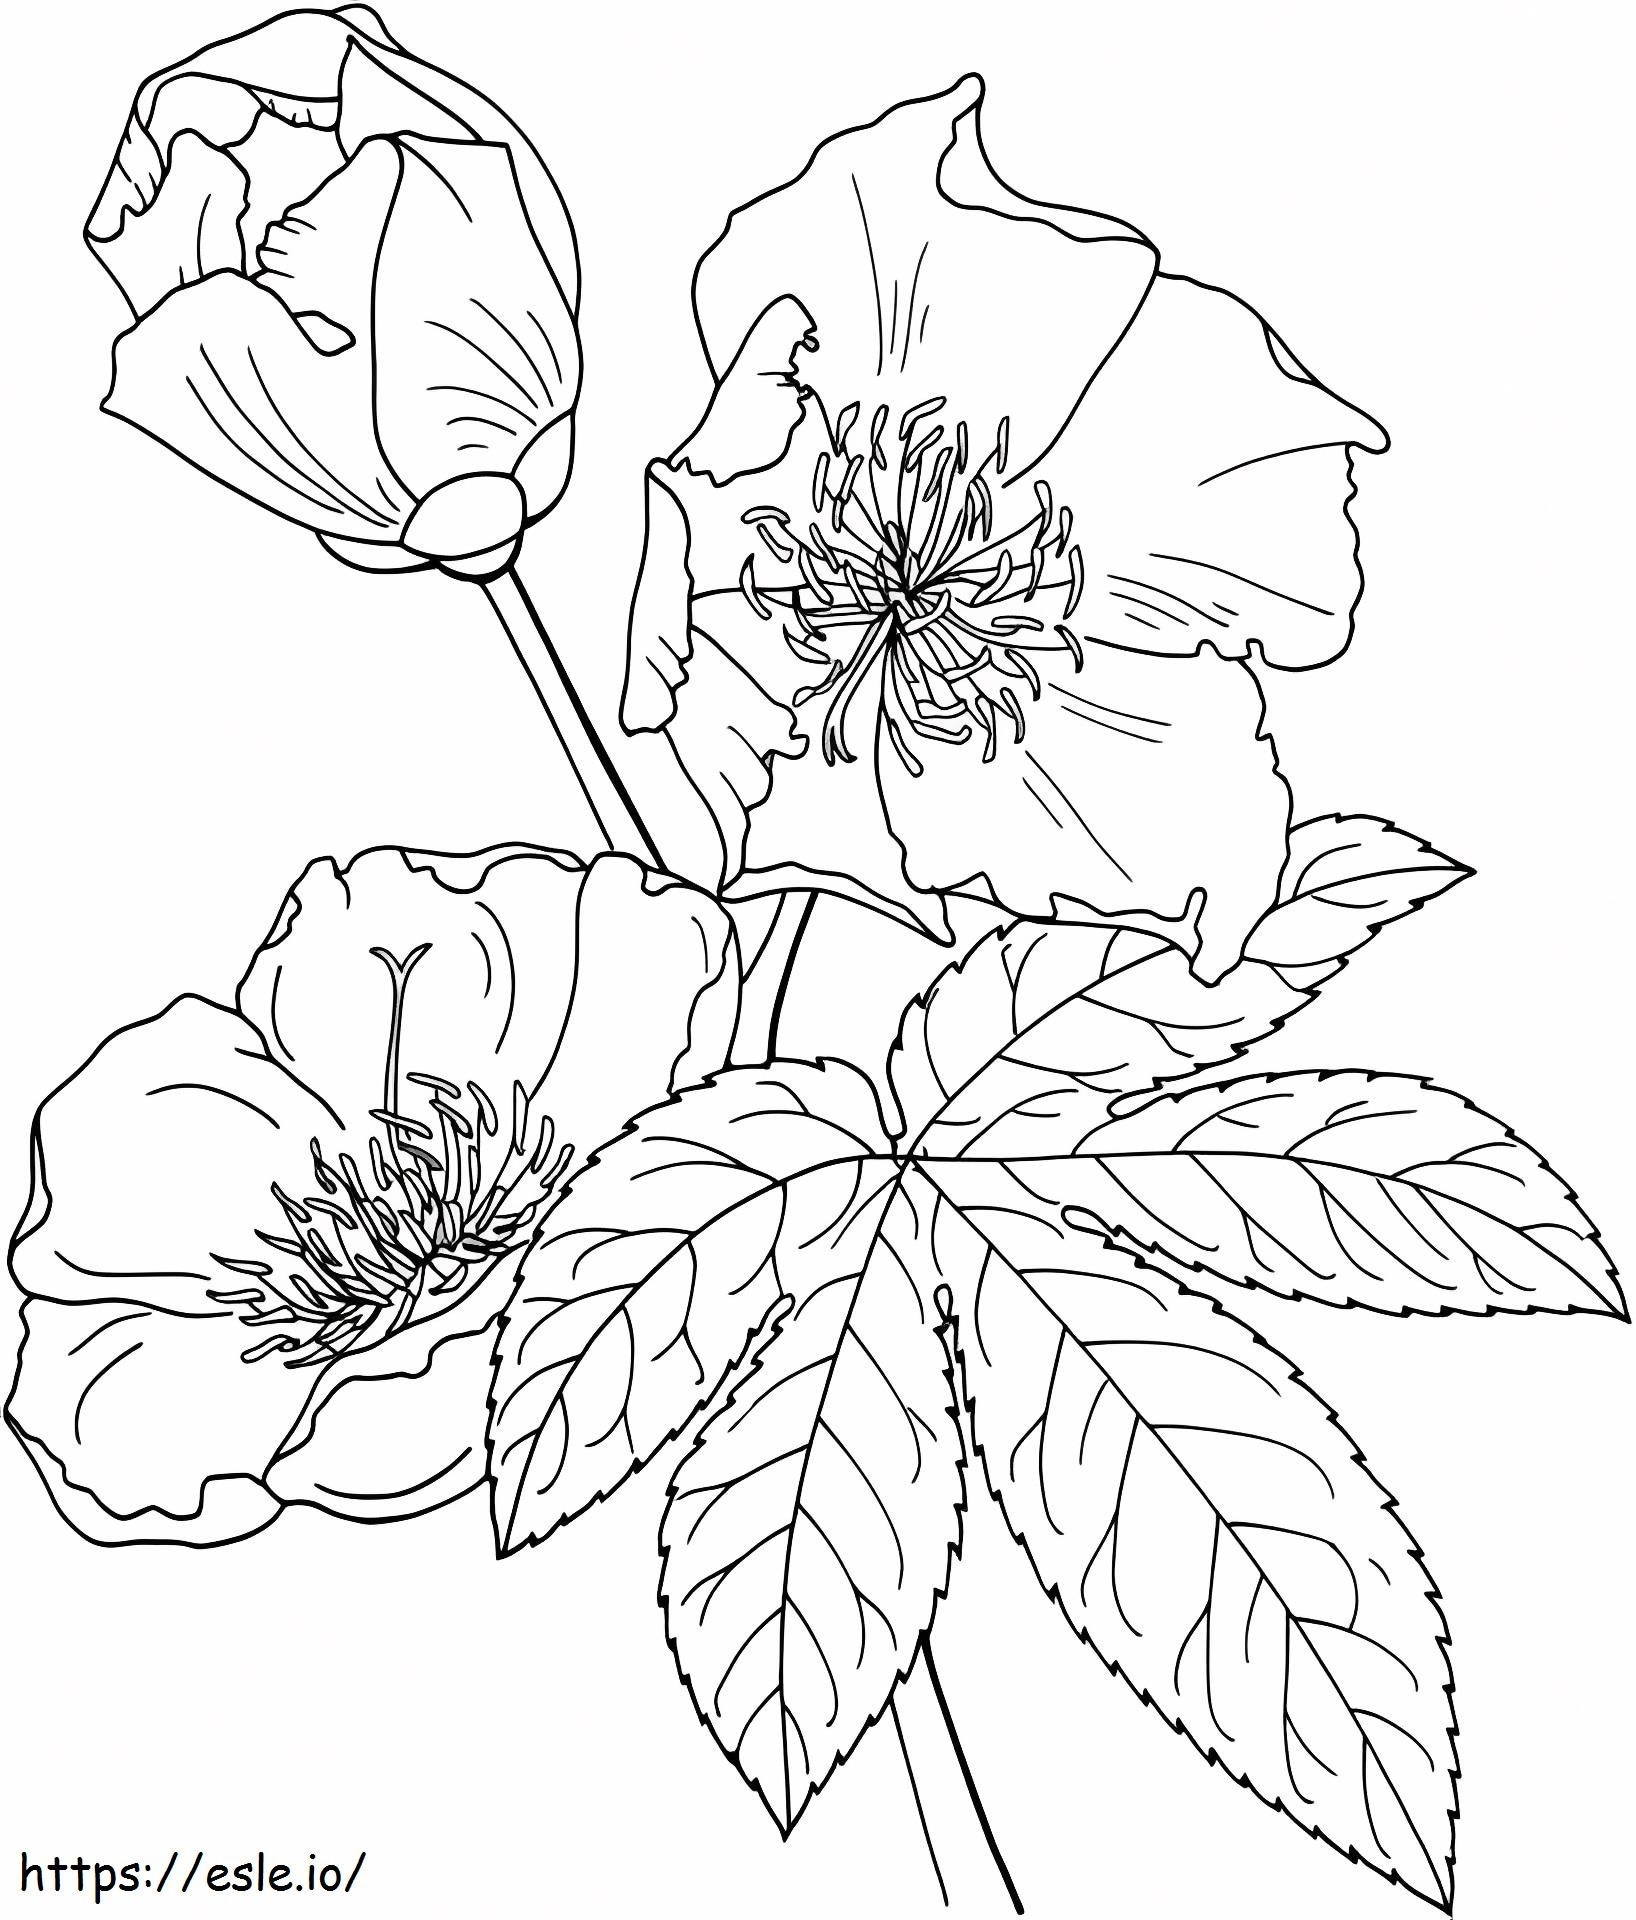 1527065135_Cochlospermum Vitifolium ou árvore de botão de ouro para colorir